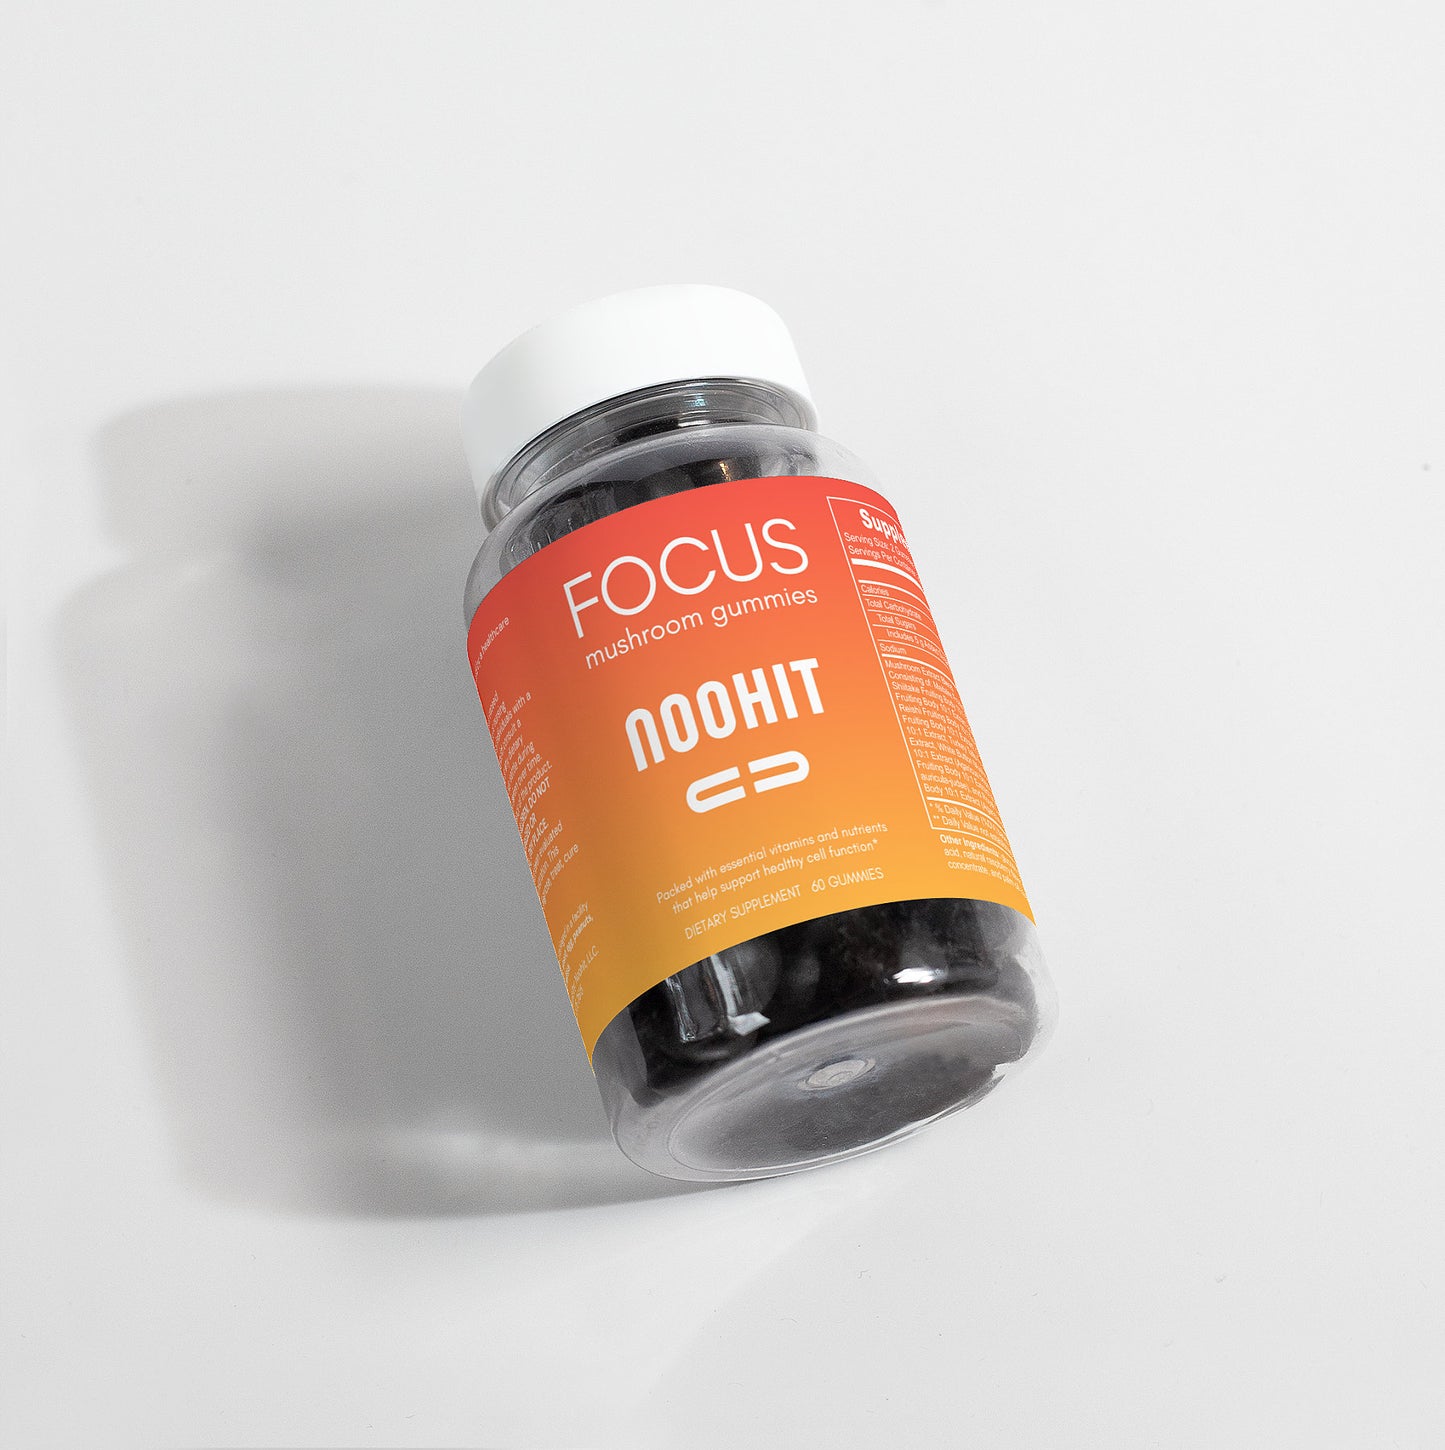 Noohit - Focus gummies